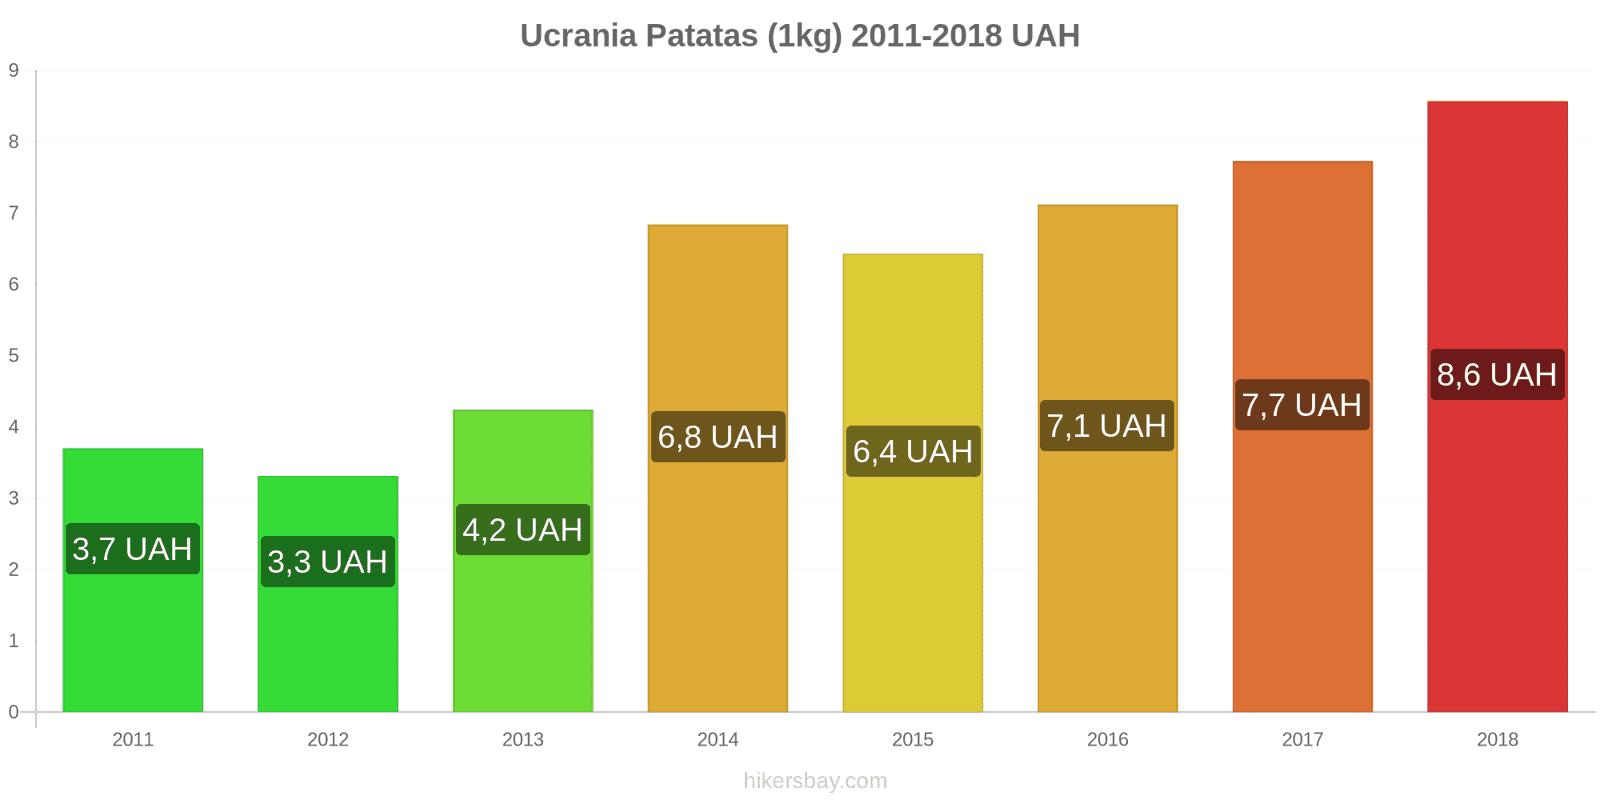 Ucrania cambios de precios Patatas (1kg) hikersbay.com